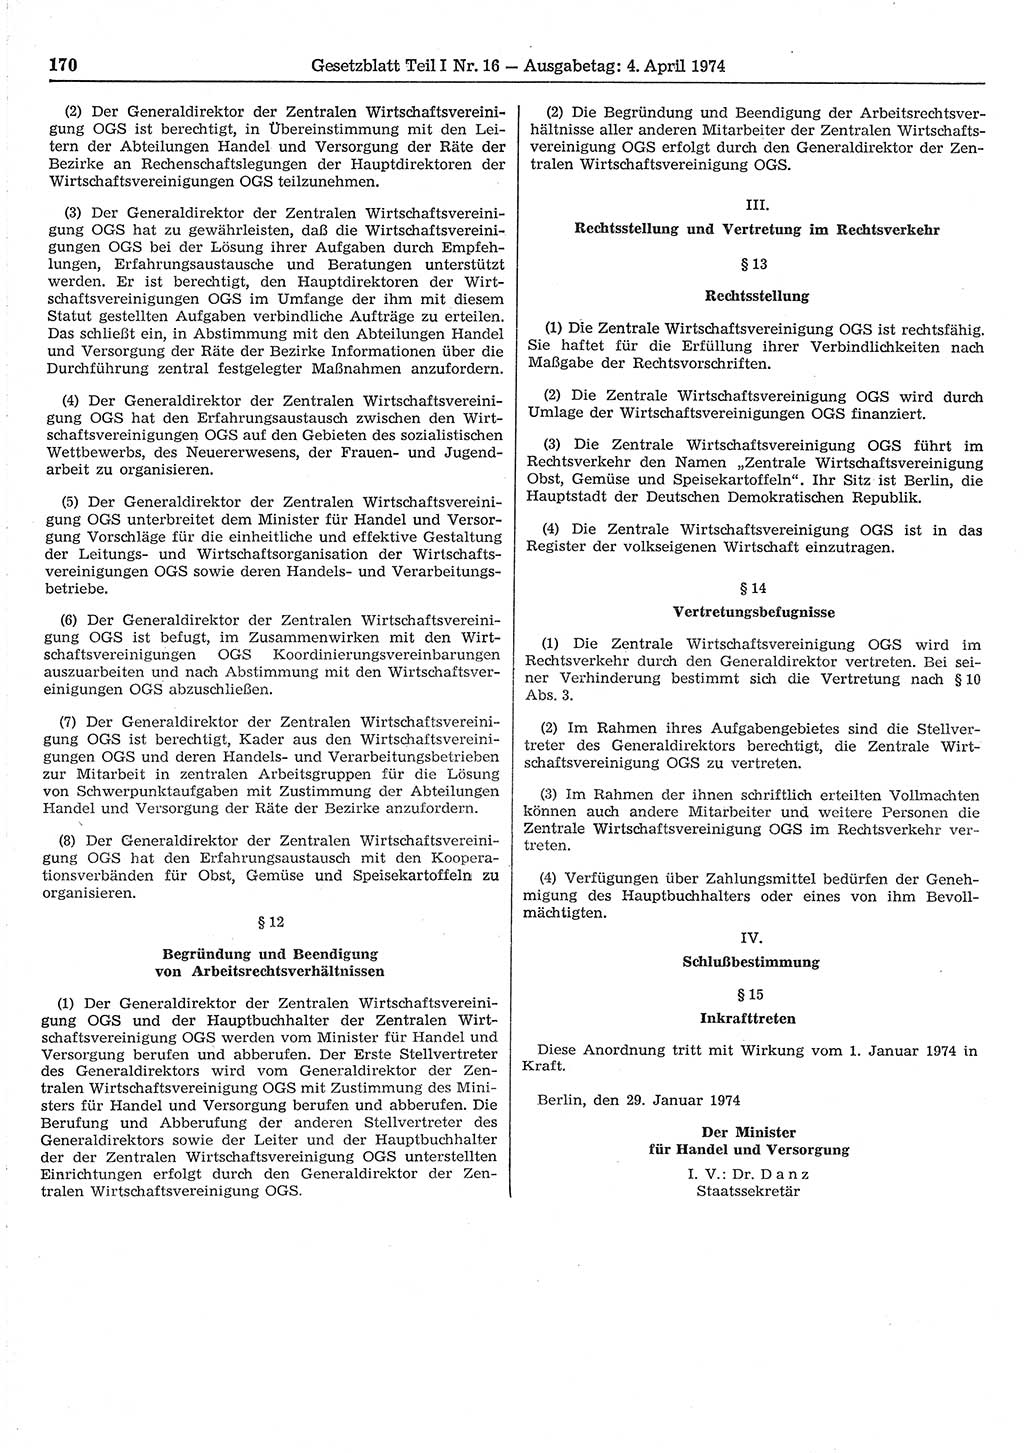 Gesetzblatt (GBl.) der Deutschen Demokratischen Republik (DDR) Teil Ⅰ 1974, Seite 170 (GBl. DDR Ⅰ 1974, S. 170)